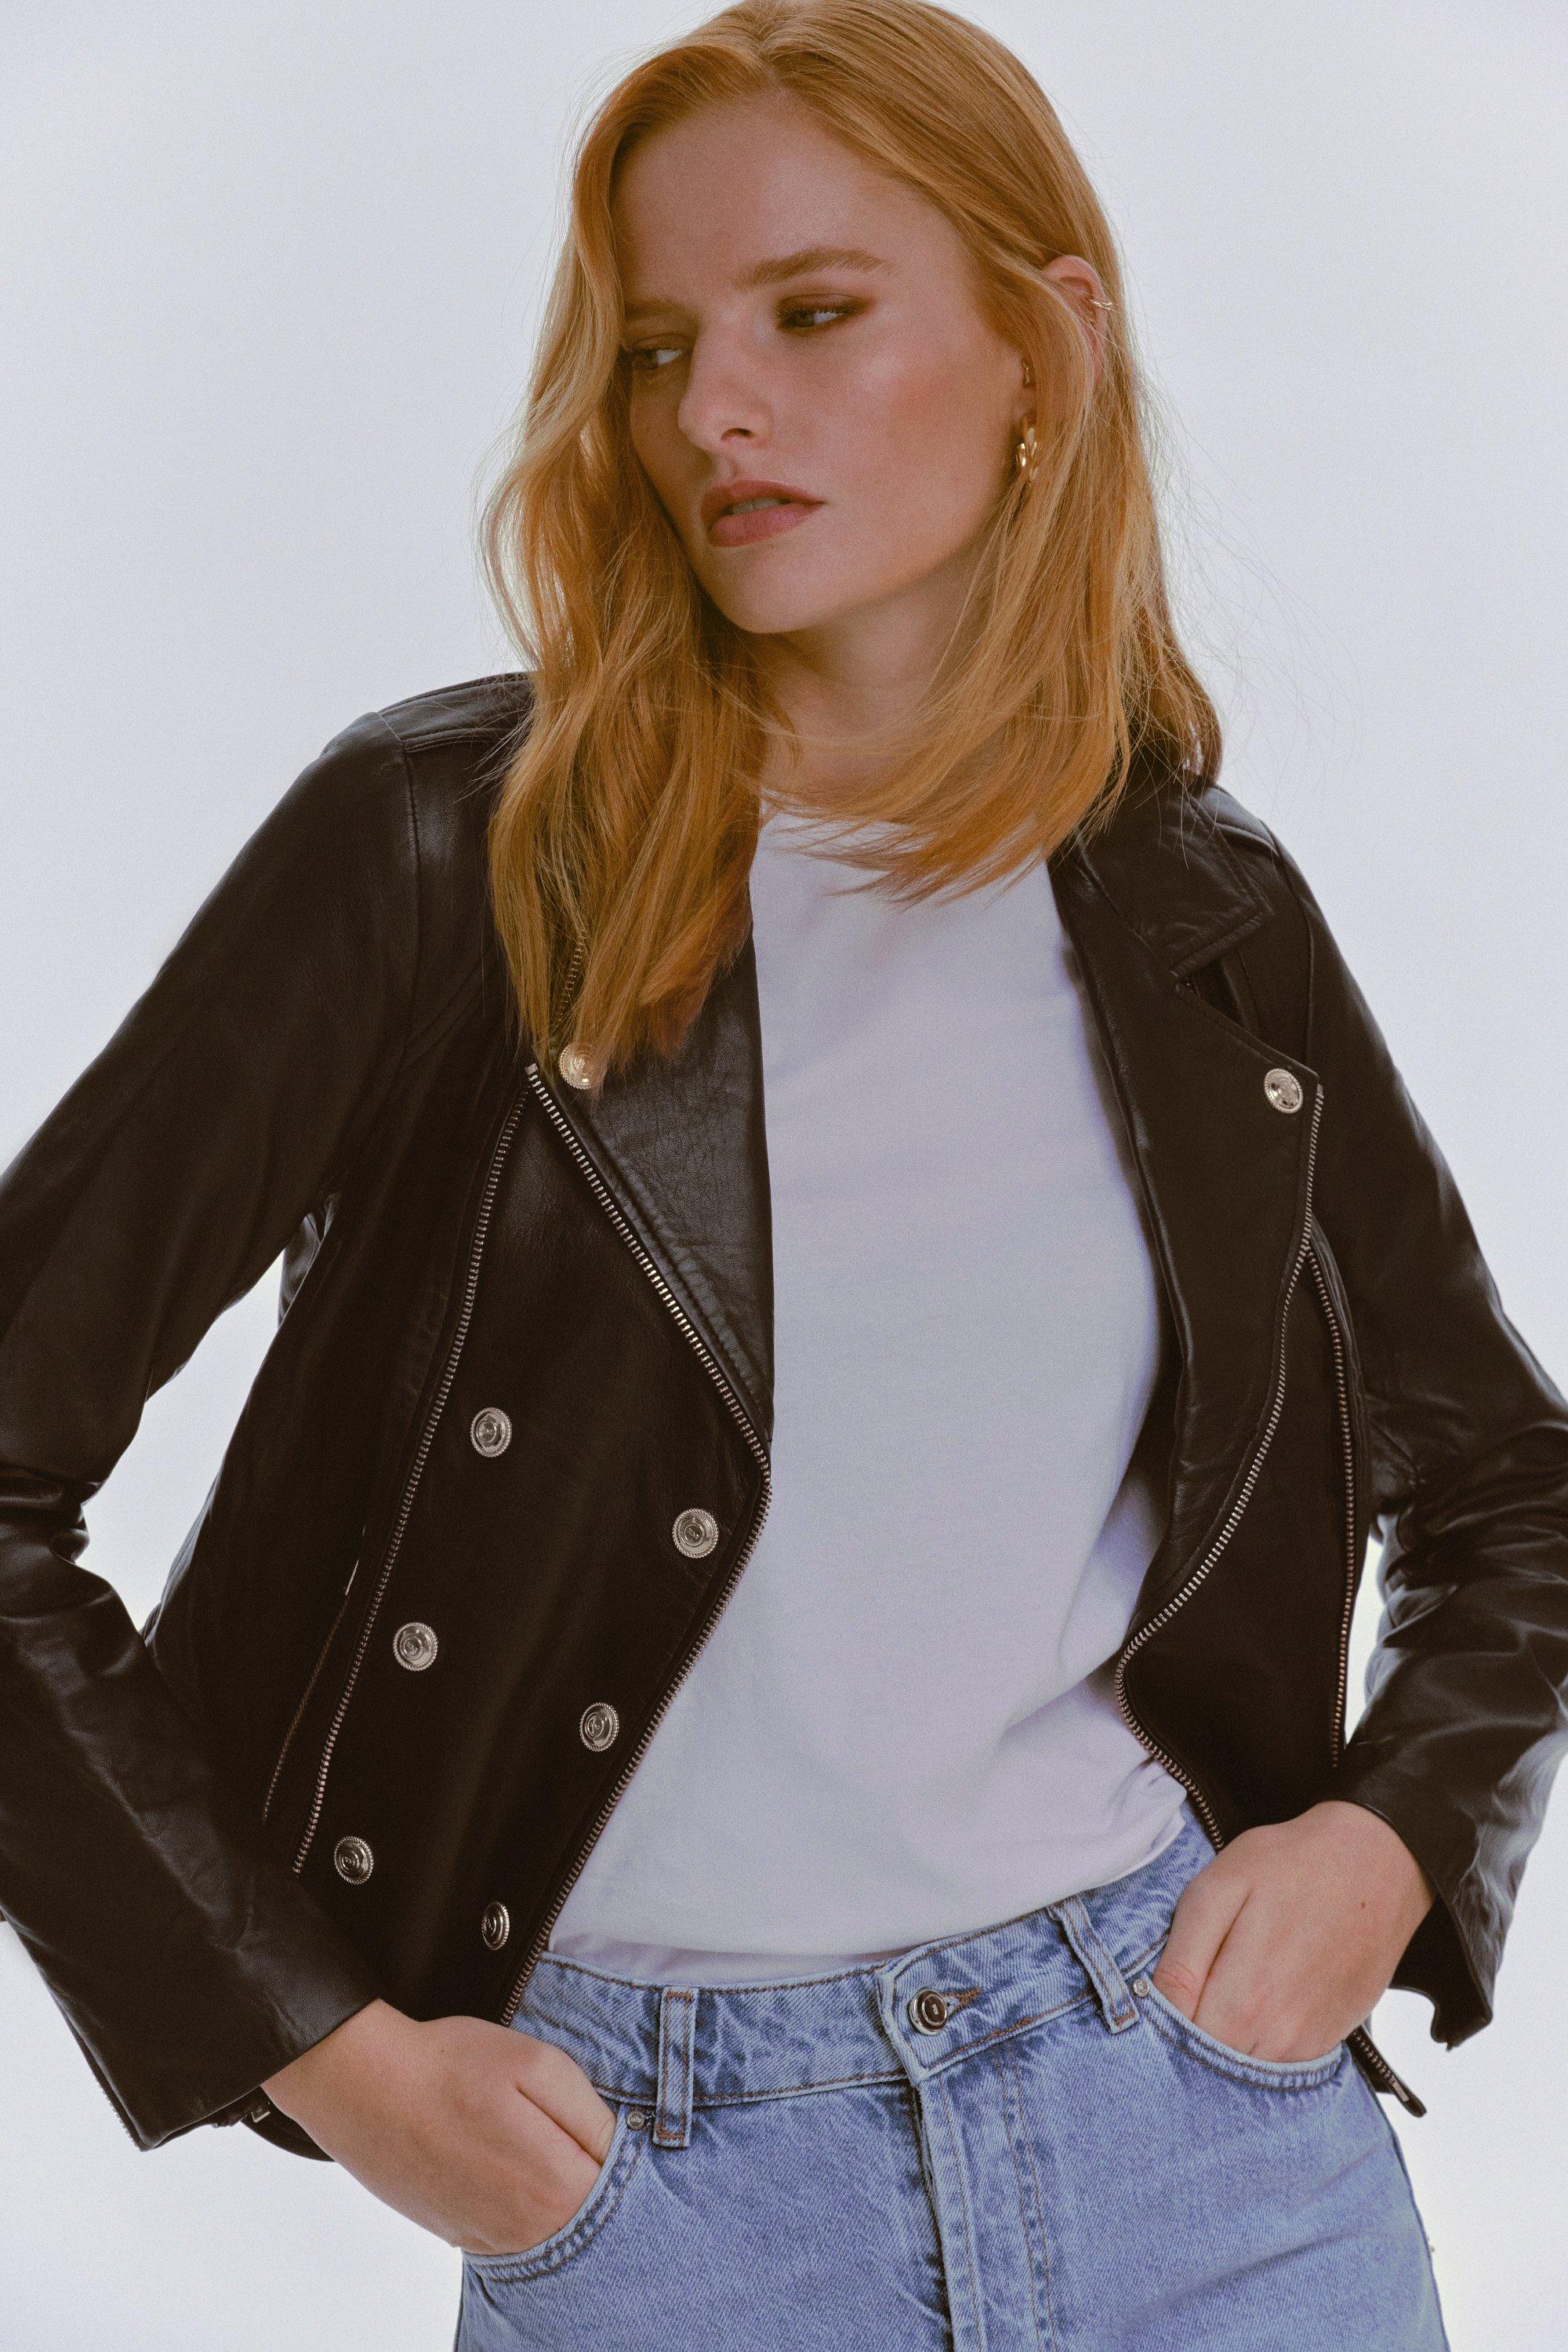 Women's Leather Jackets   Karen Millen US